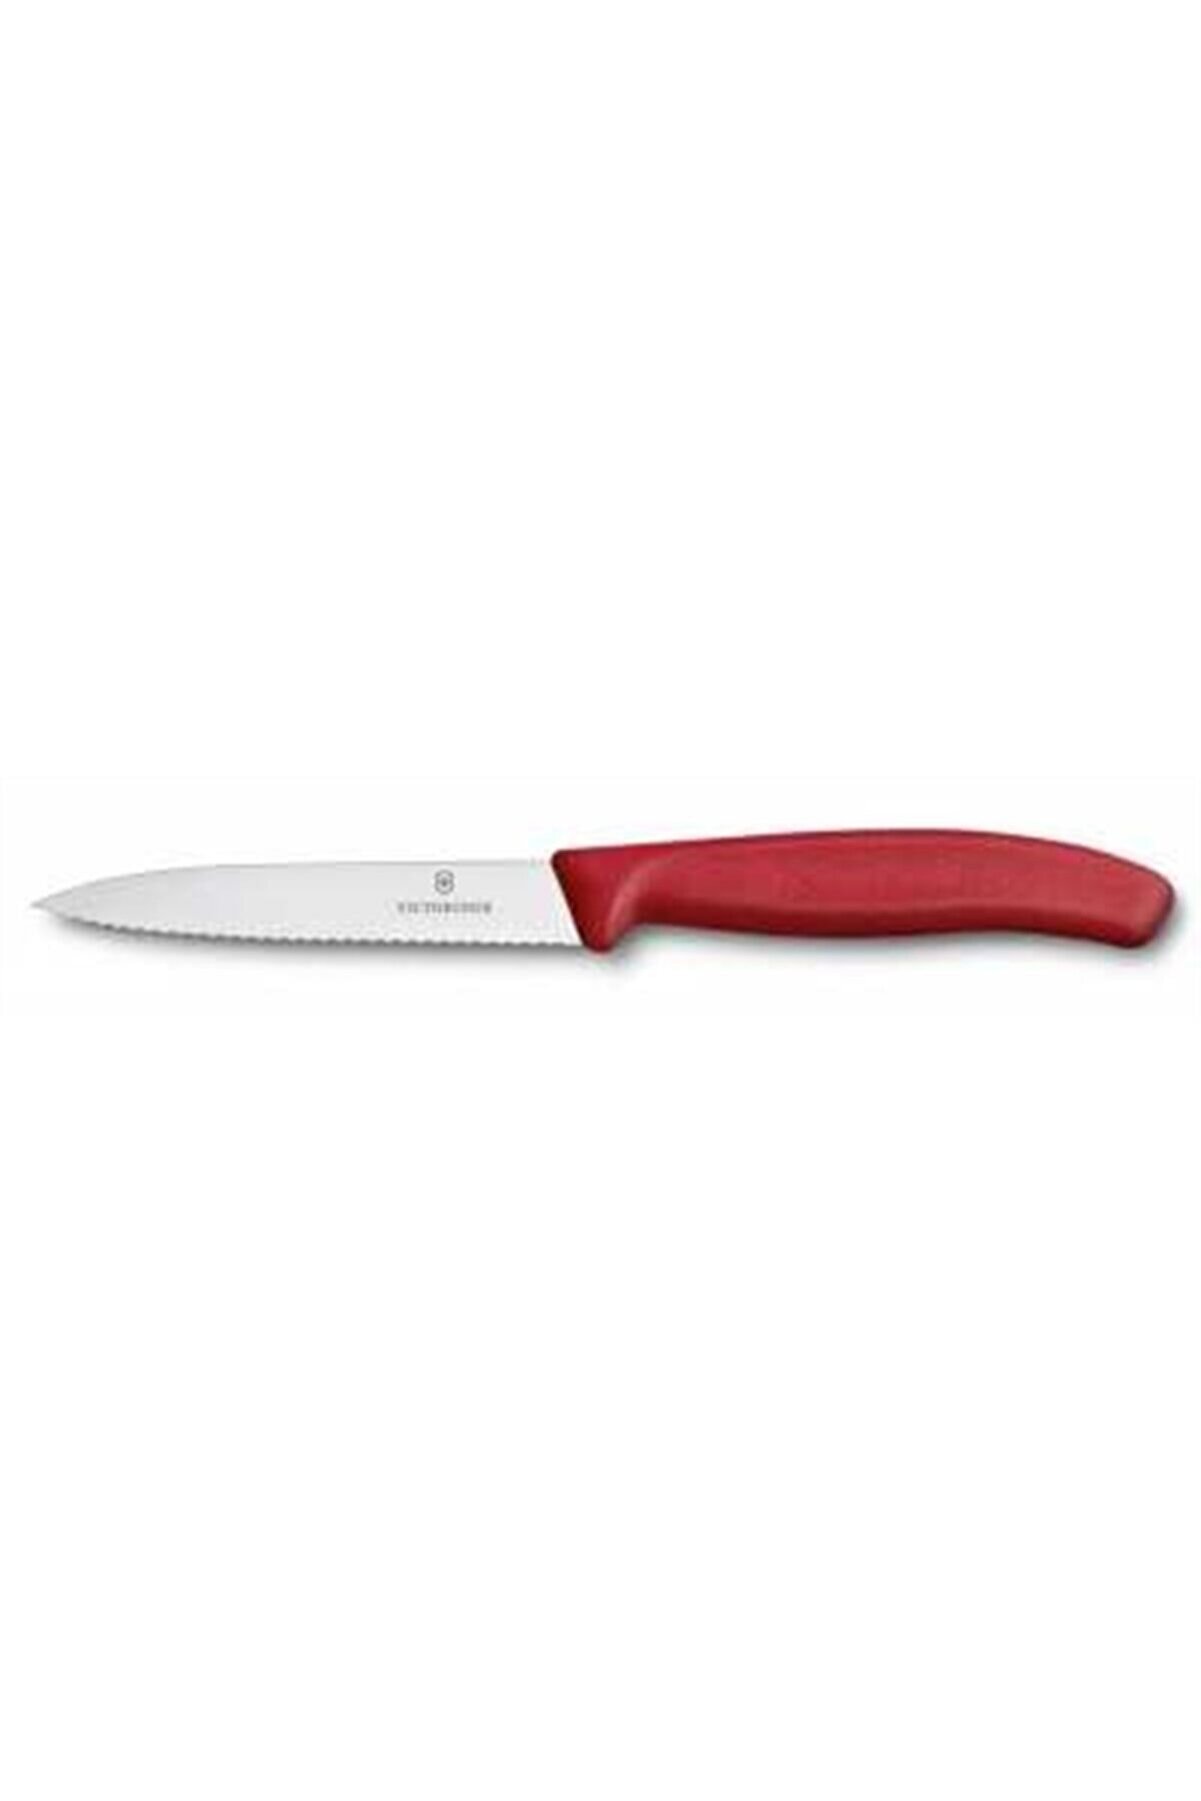 VICTORINOX 10cm Tırtıklı Soyma Bıçağı Kırmızı Bıçak 6.7731